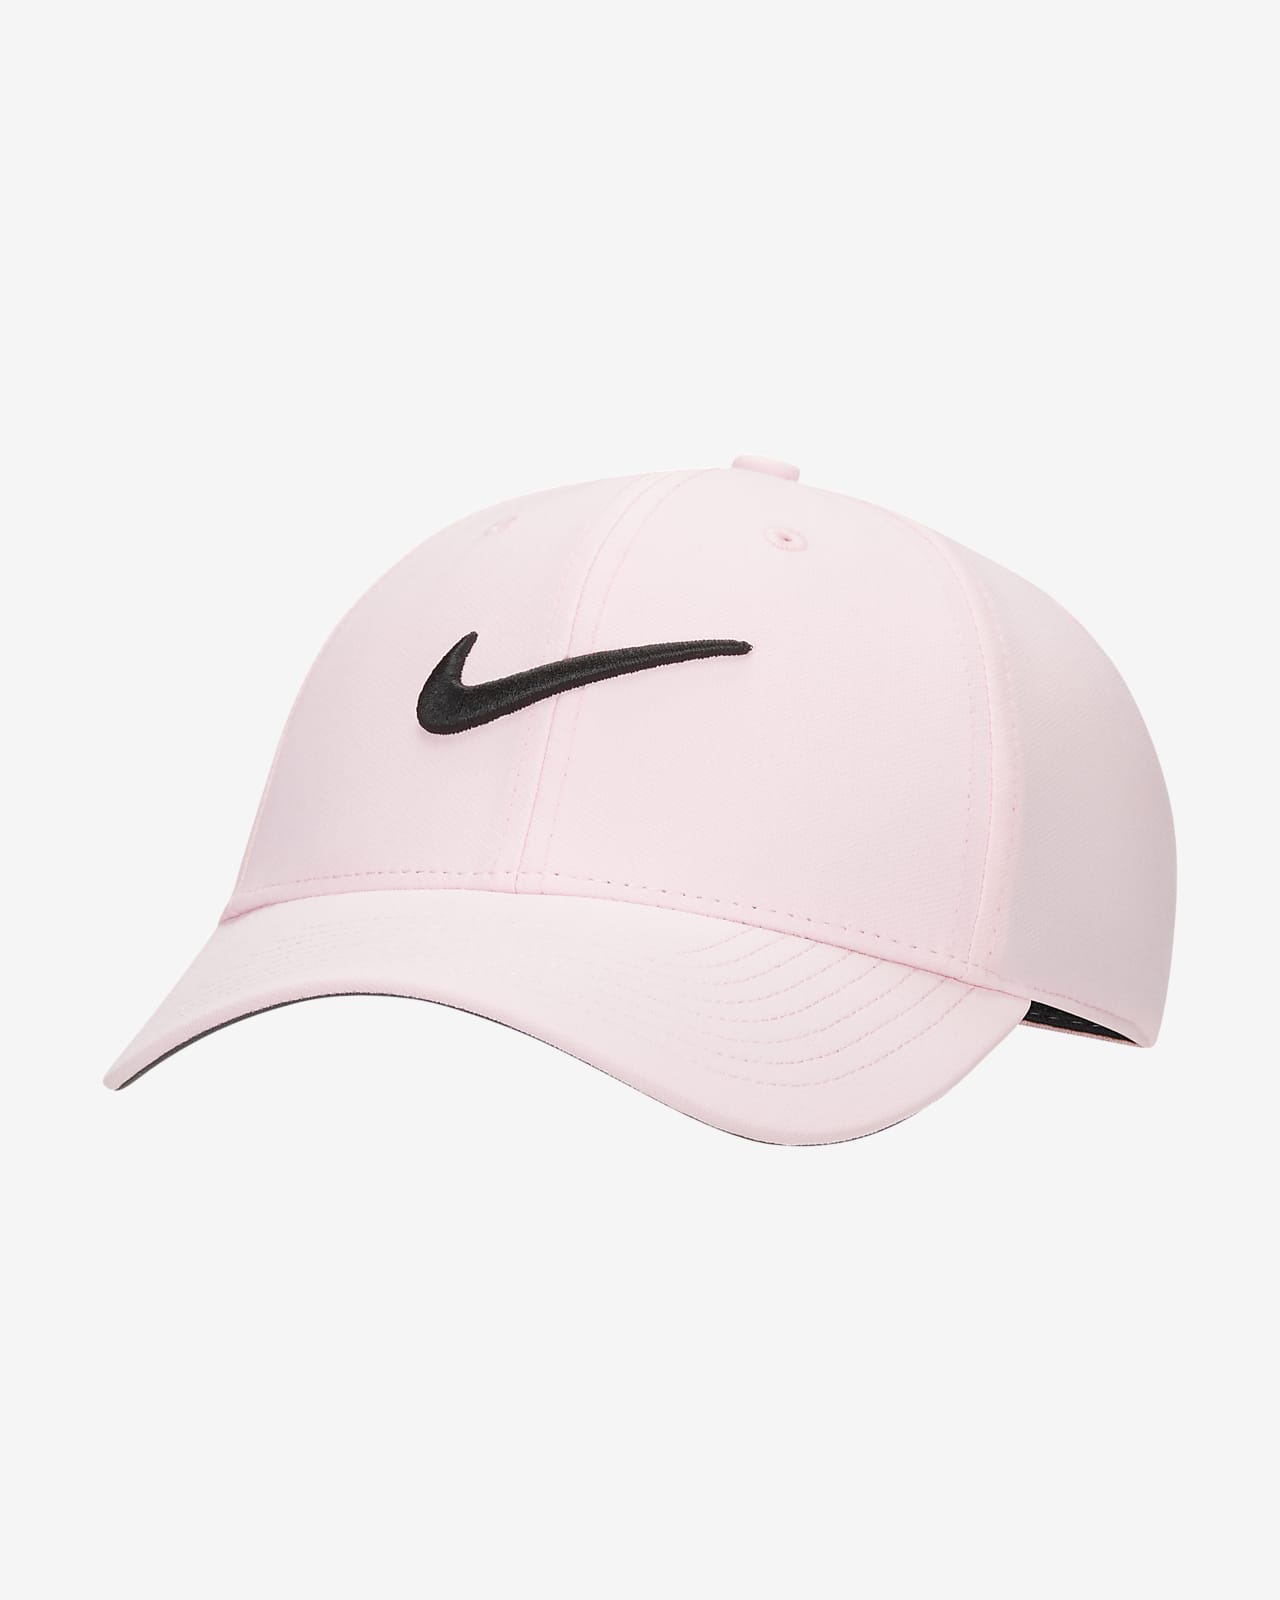 Club Nike Swoosh Dri-FIT Structured Cap.